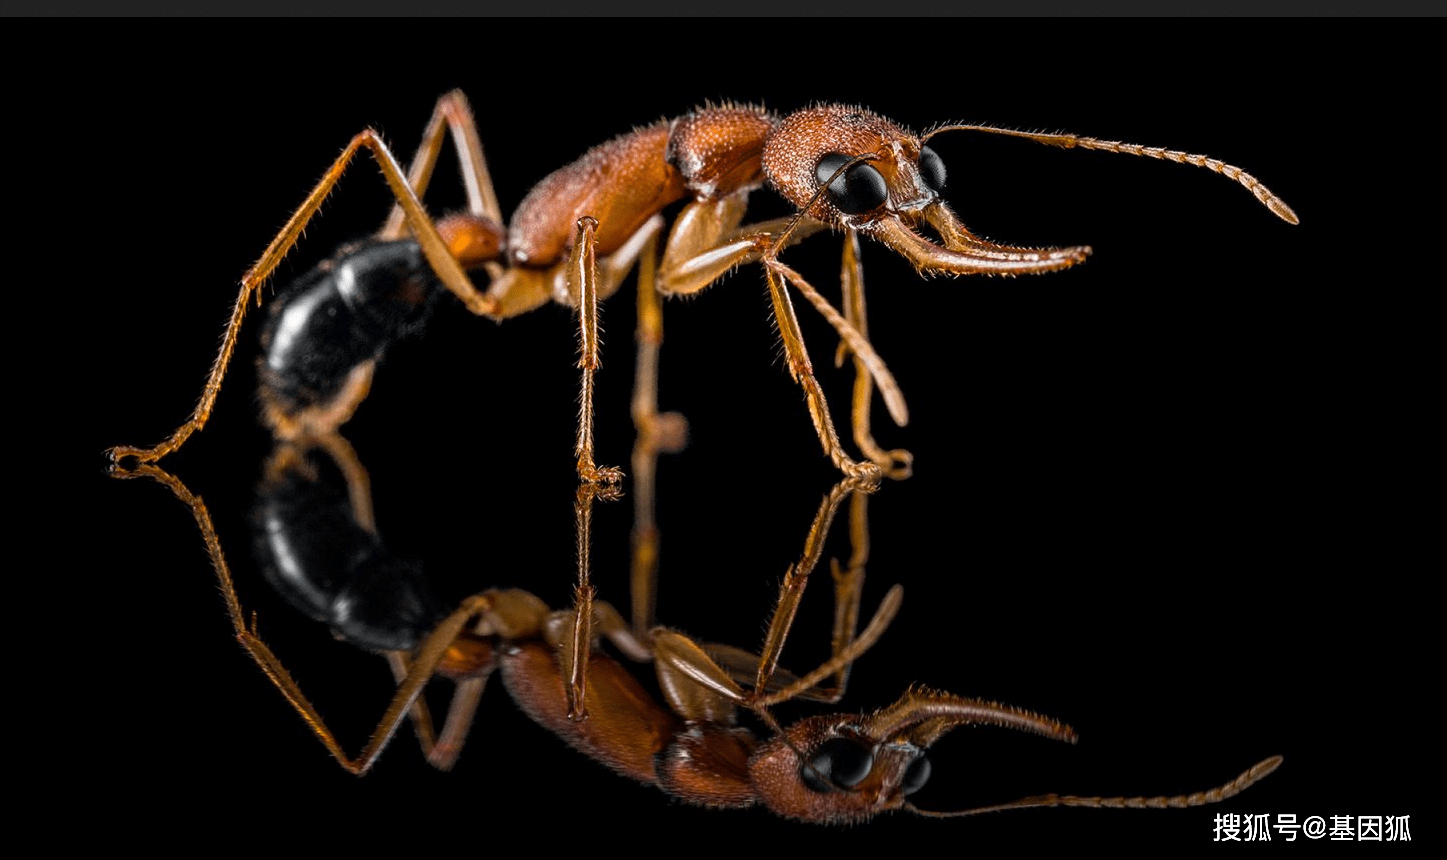 一只蚂蚁的寿命有多长（昆虫记中红蚂蚁的寿命记载） – 碳资讯